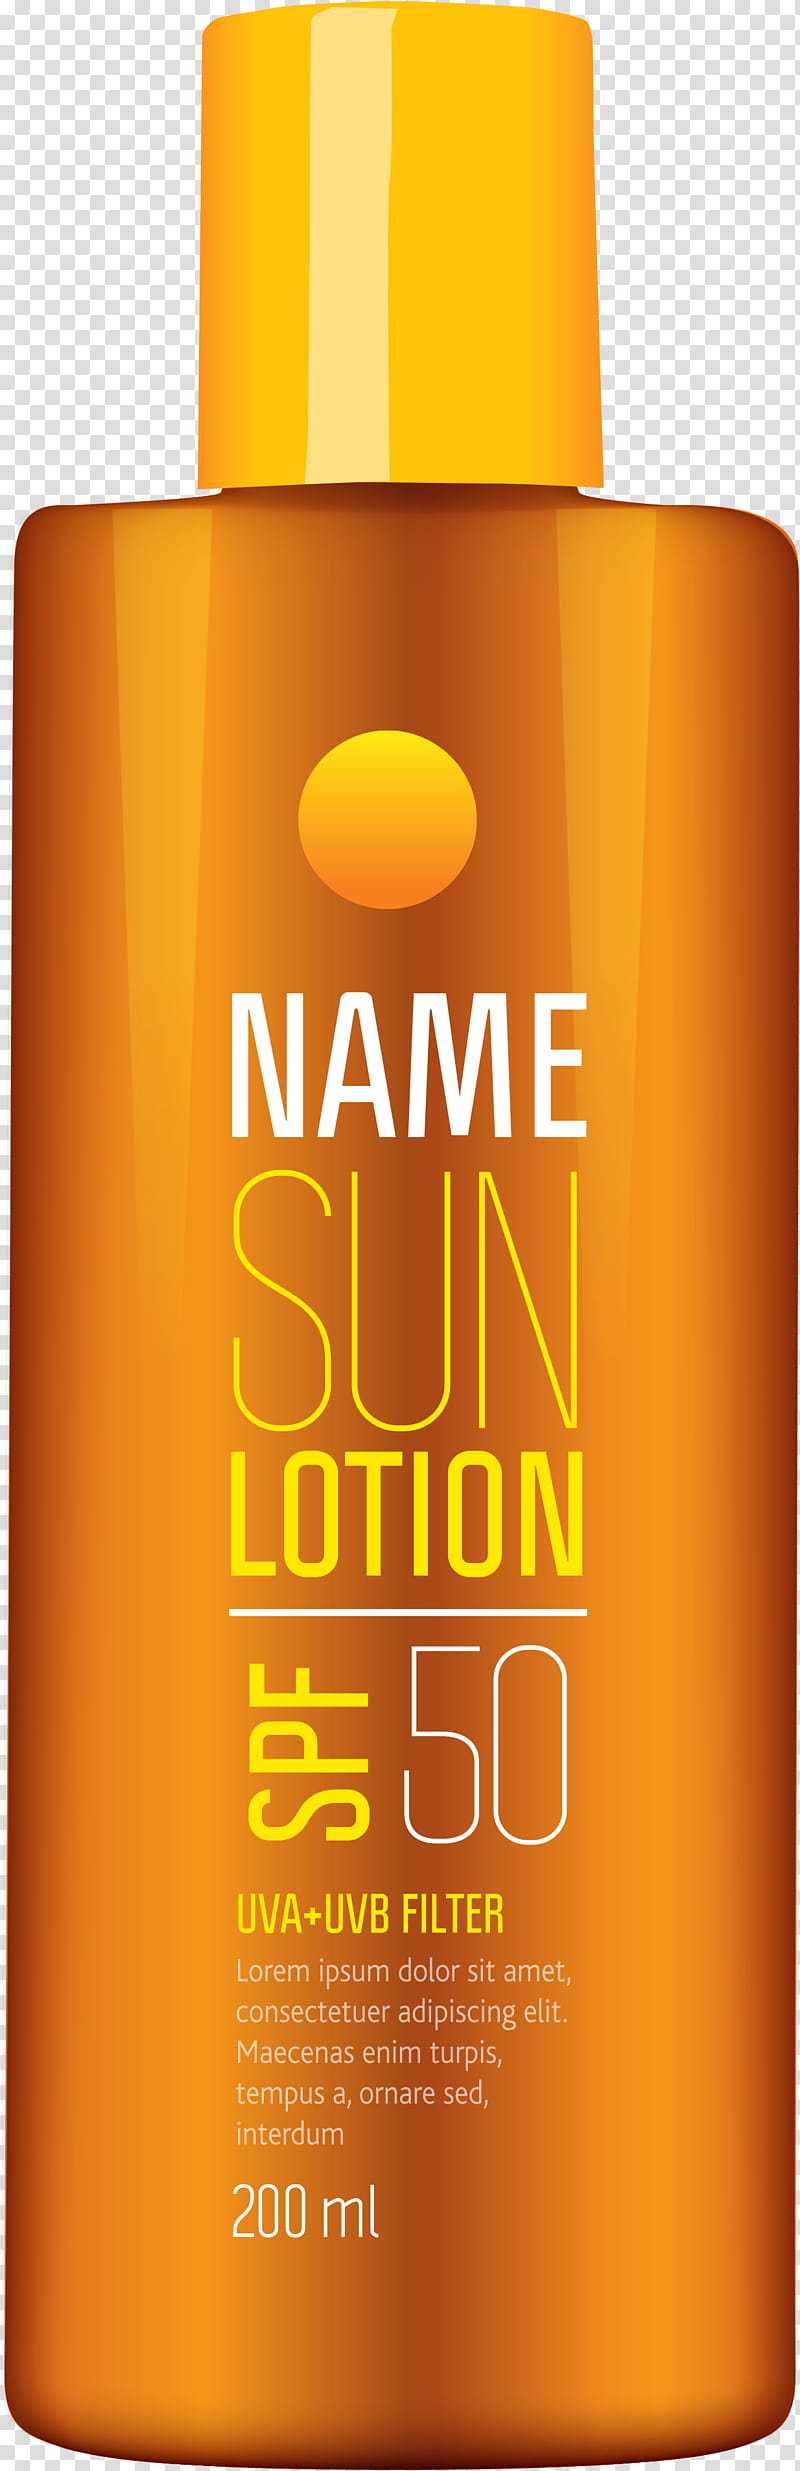 Juice, Sunscreen, Lotion, Liquidm Inc, Liqueur, Drink, Yellow, Bottle transparent background PNG clipart